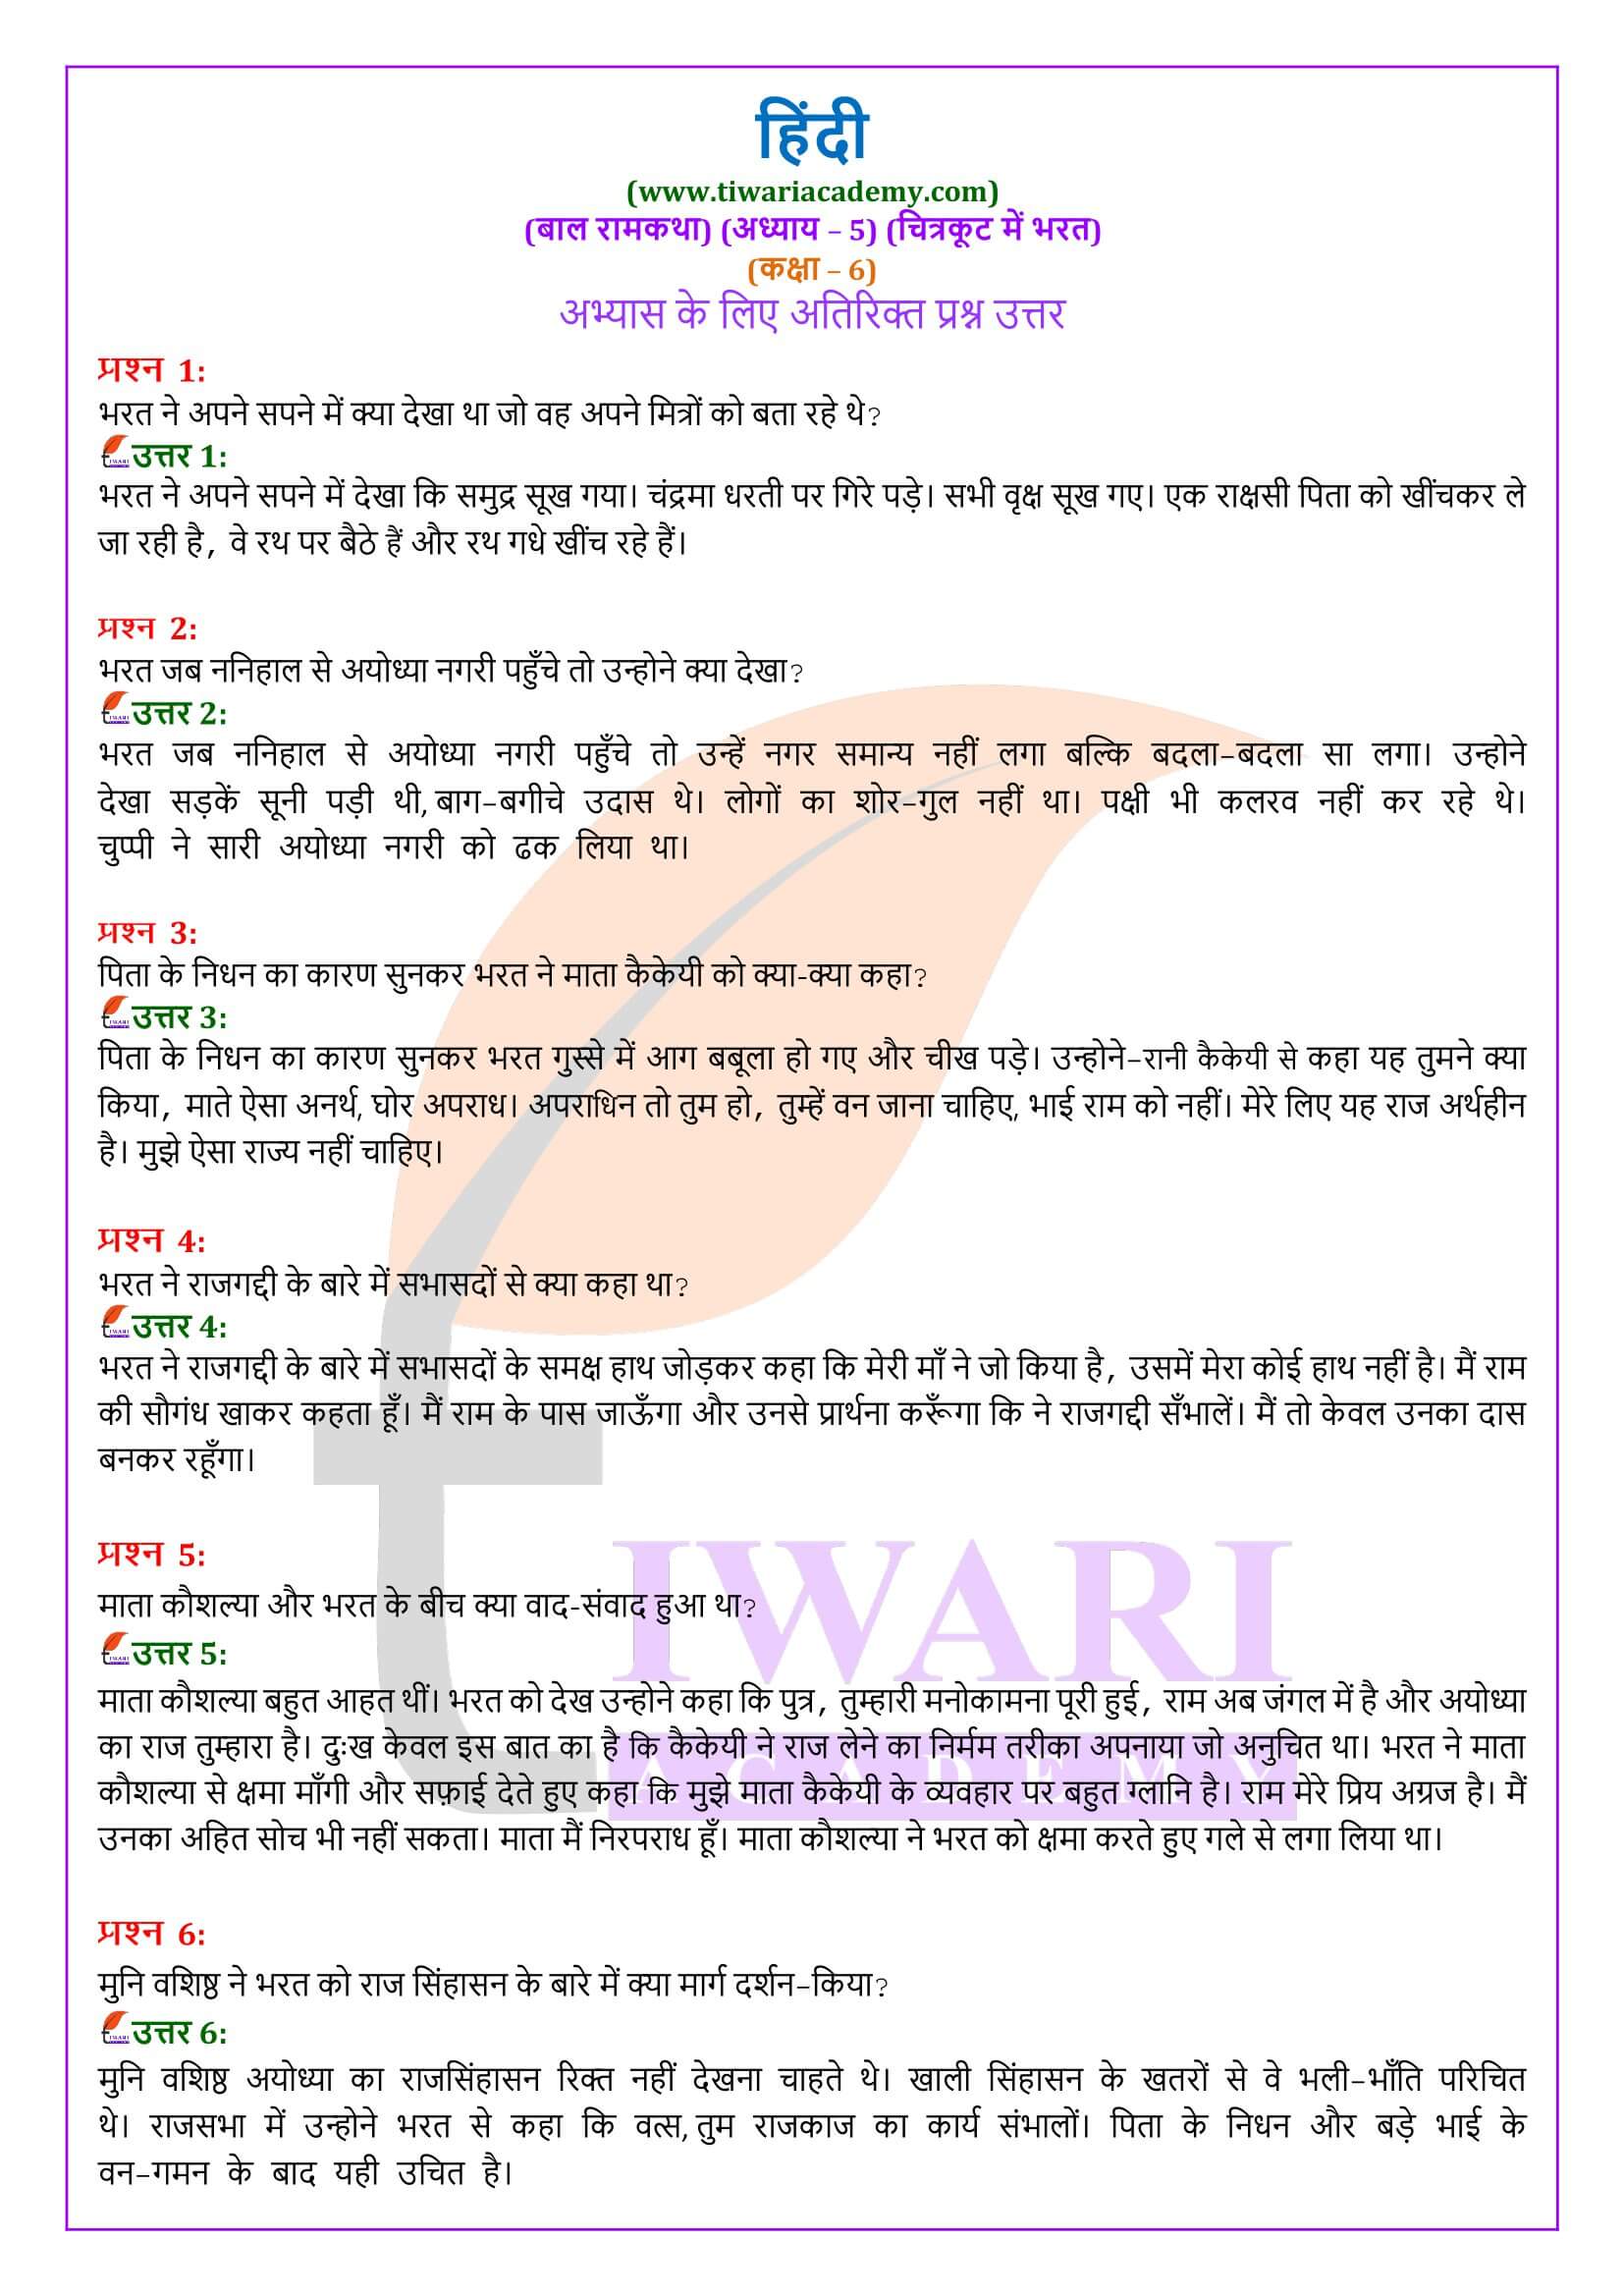 कक्षा 6 हिंदी बाल रामकथा अध्याय 5 चित्रकूट में भरत